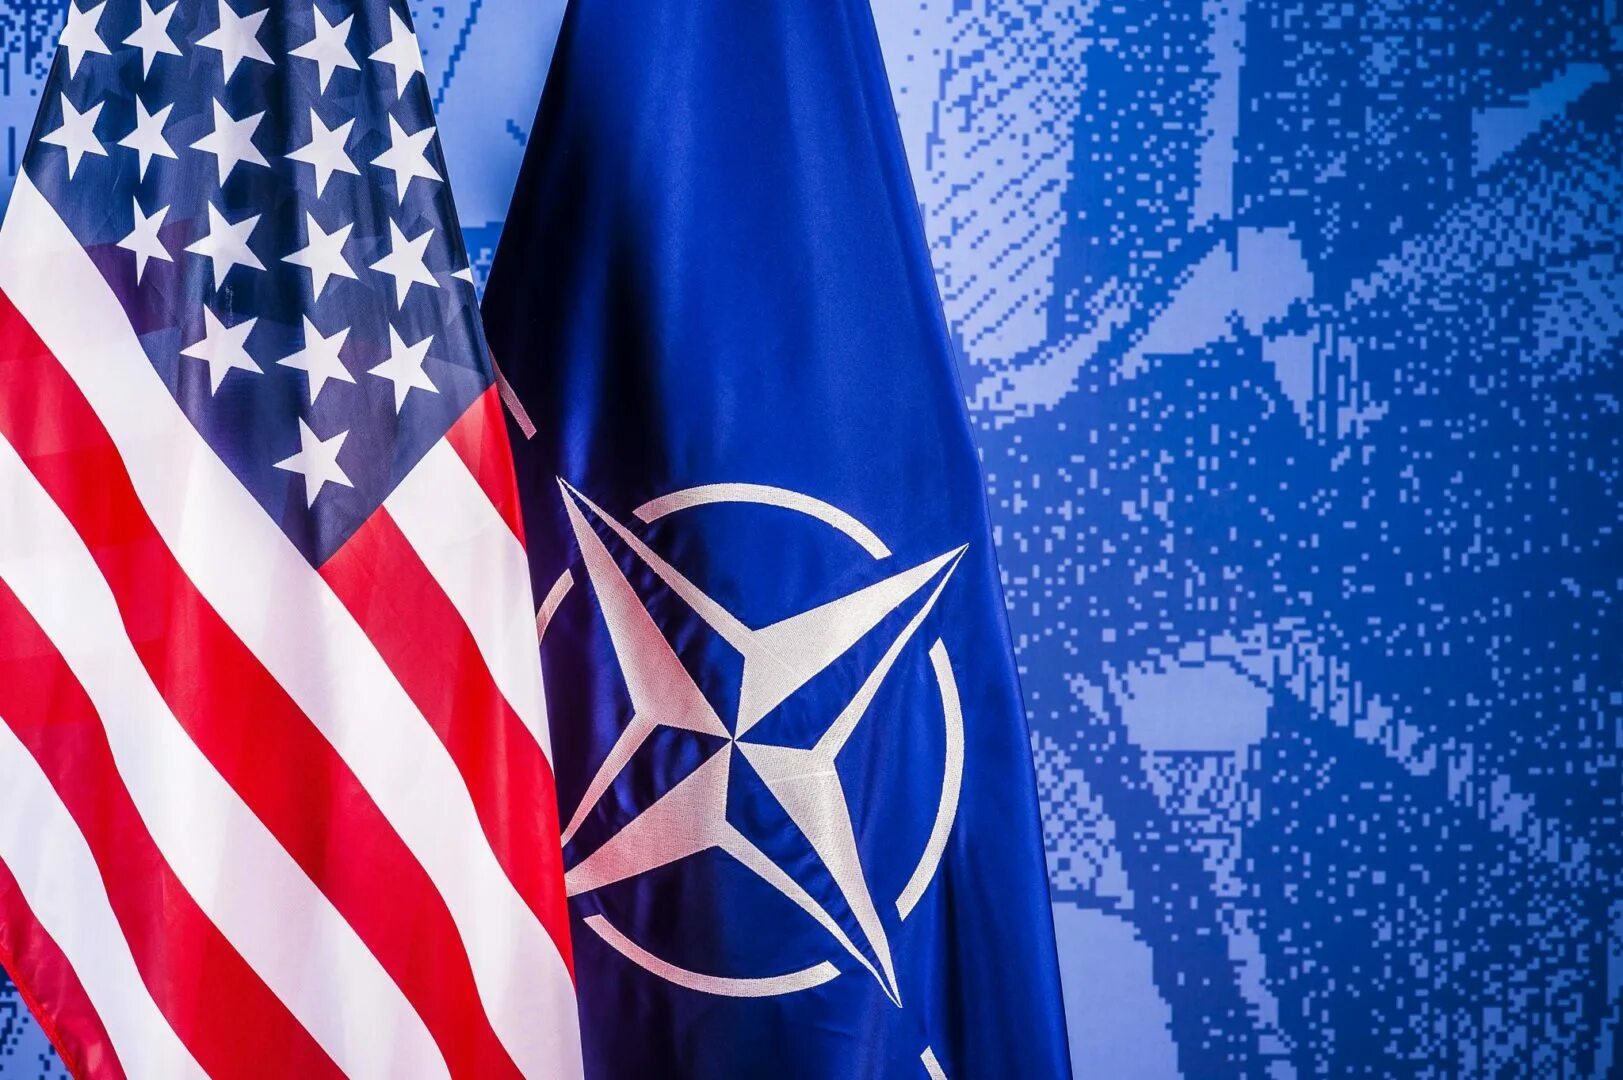 Франция страна нато. Америка НАТО. NATO - North Atlantic Treaty Organization. Флаг США И НАТО. США НАТО.